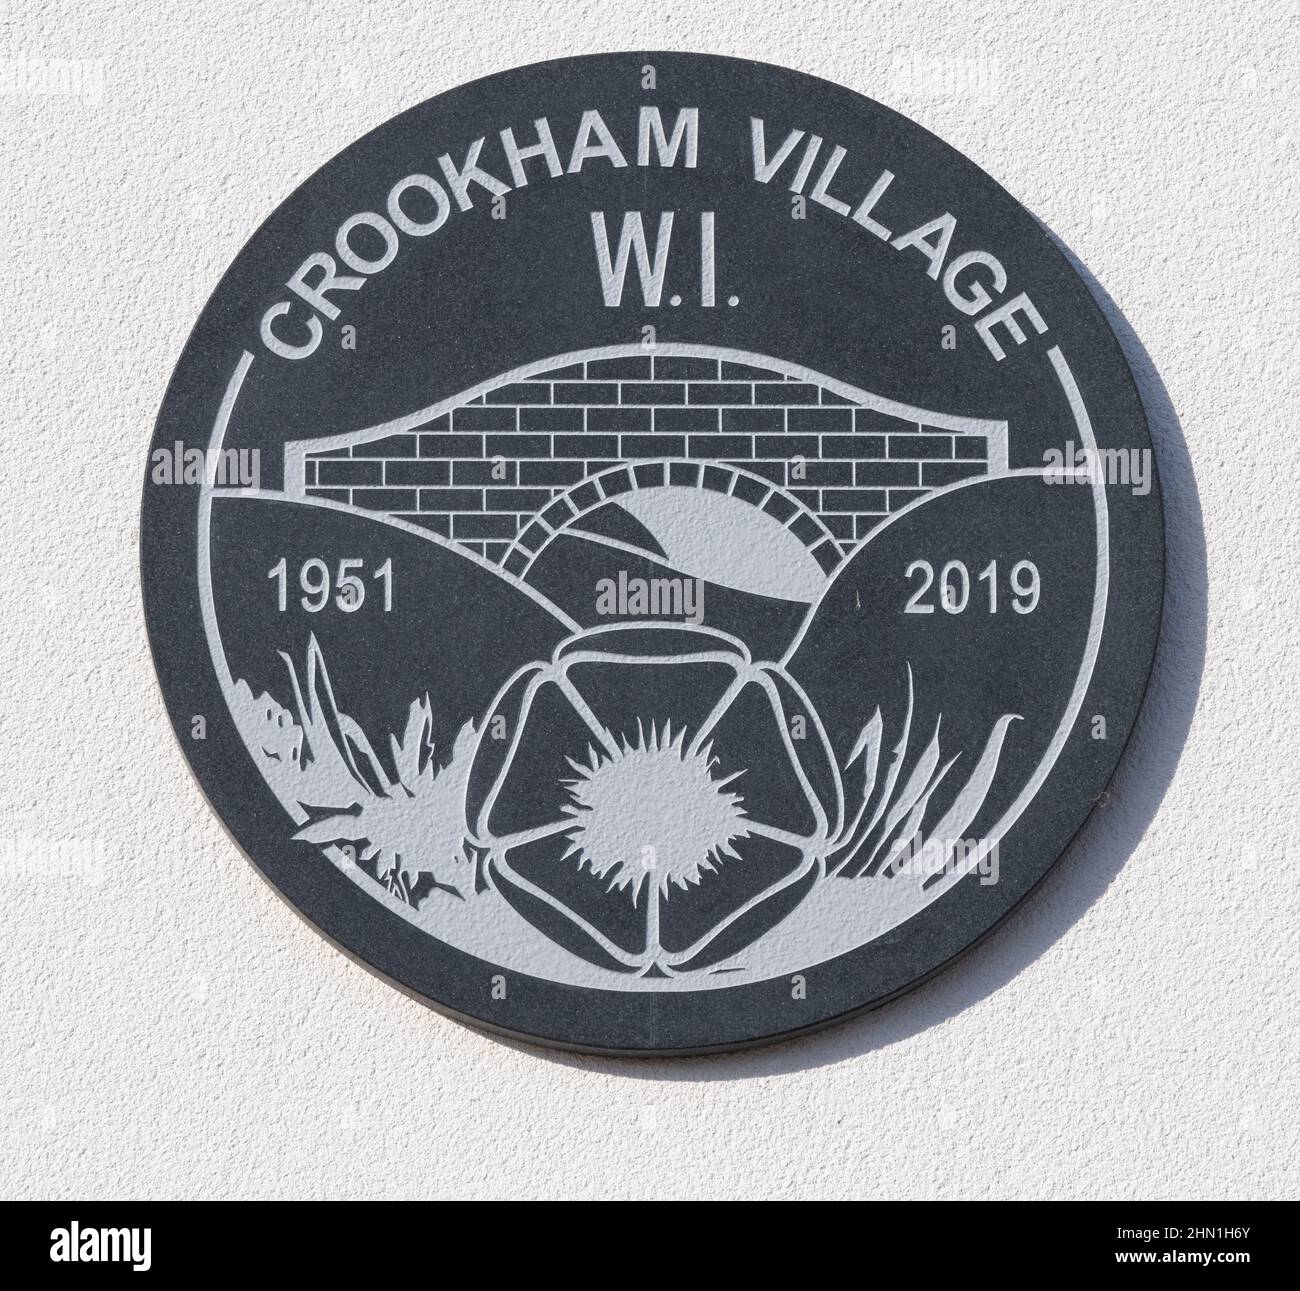 Plaque sur le Crookham Village Wi hall à Crookham, Hampshire, Angleterre, Royaume-Uni Banque D'Images